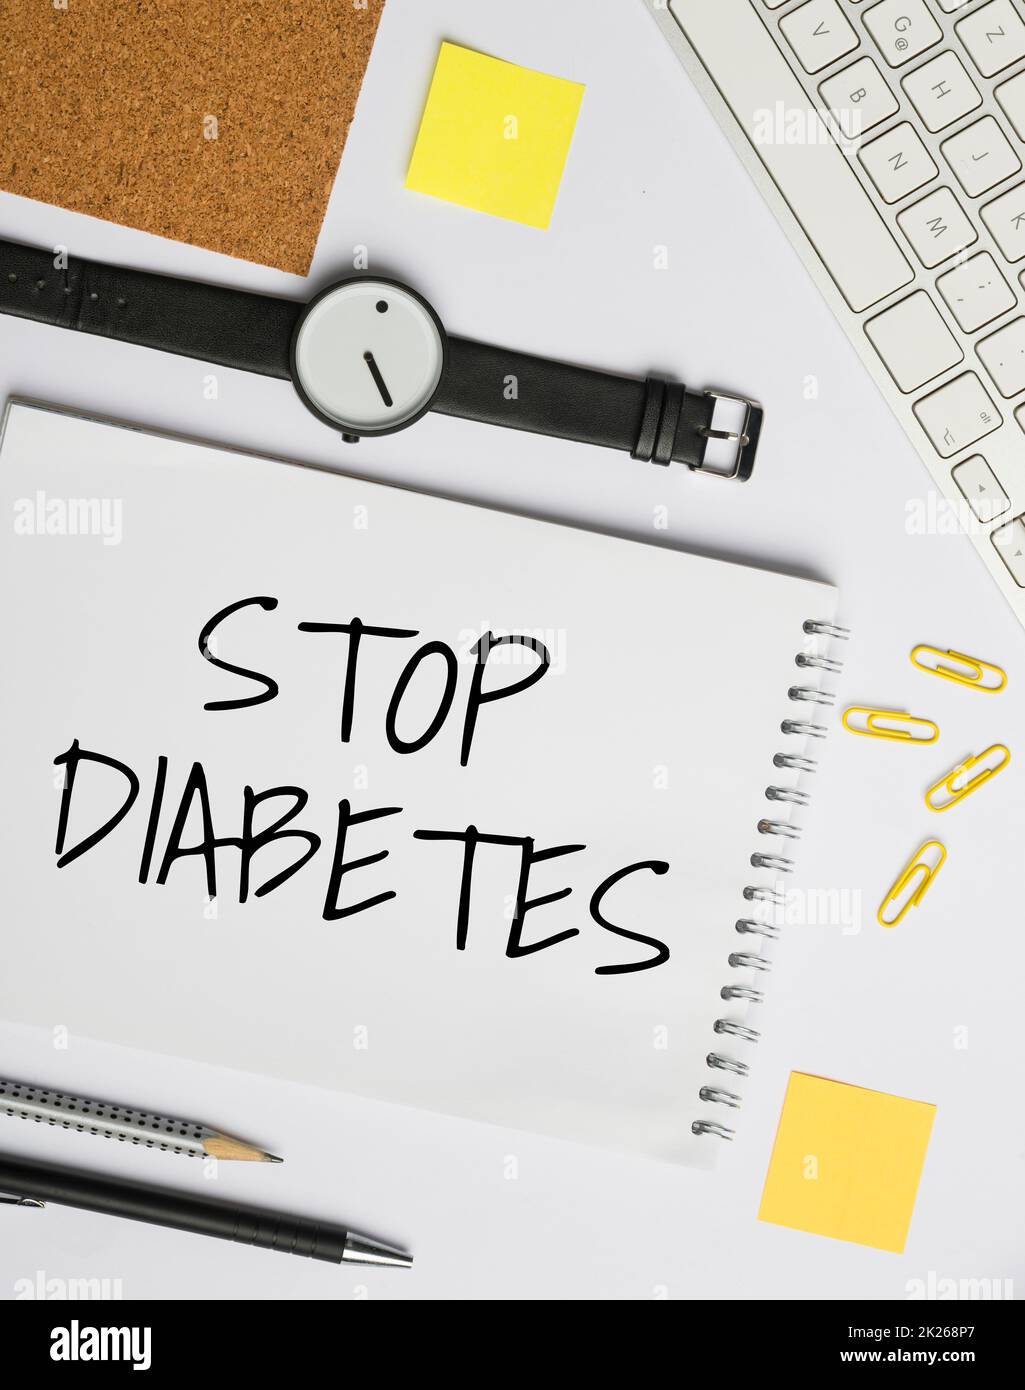 Begrifflicher Titel Stop Diabetes. Wort geschrieben auf Blut Zuckerspiegel ist höher als normal Injizieren Insulin Blitzlehrer Schule Bürobedarf, Lehrersammlung, Schreibwerkzeuge Stockfoto